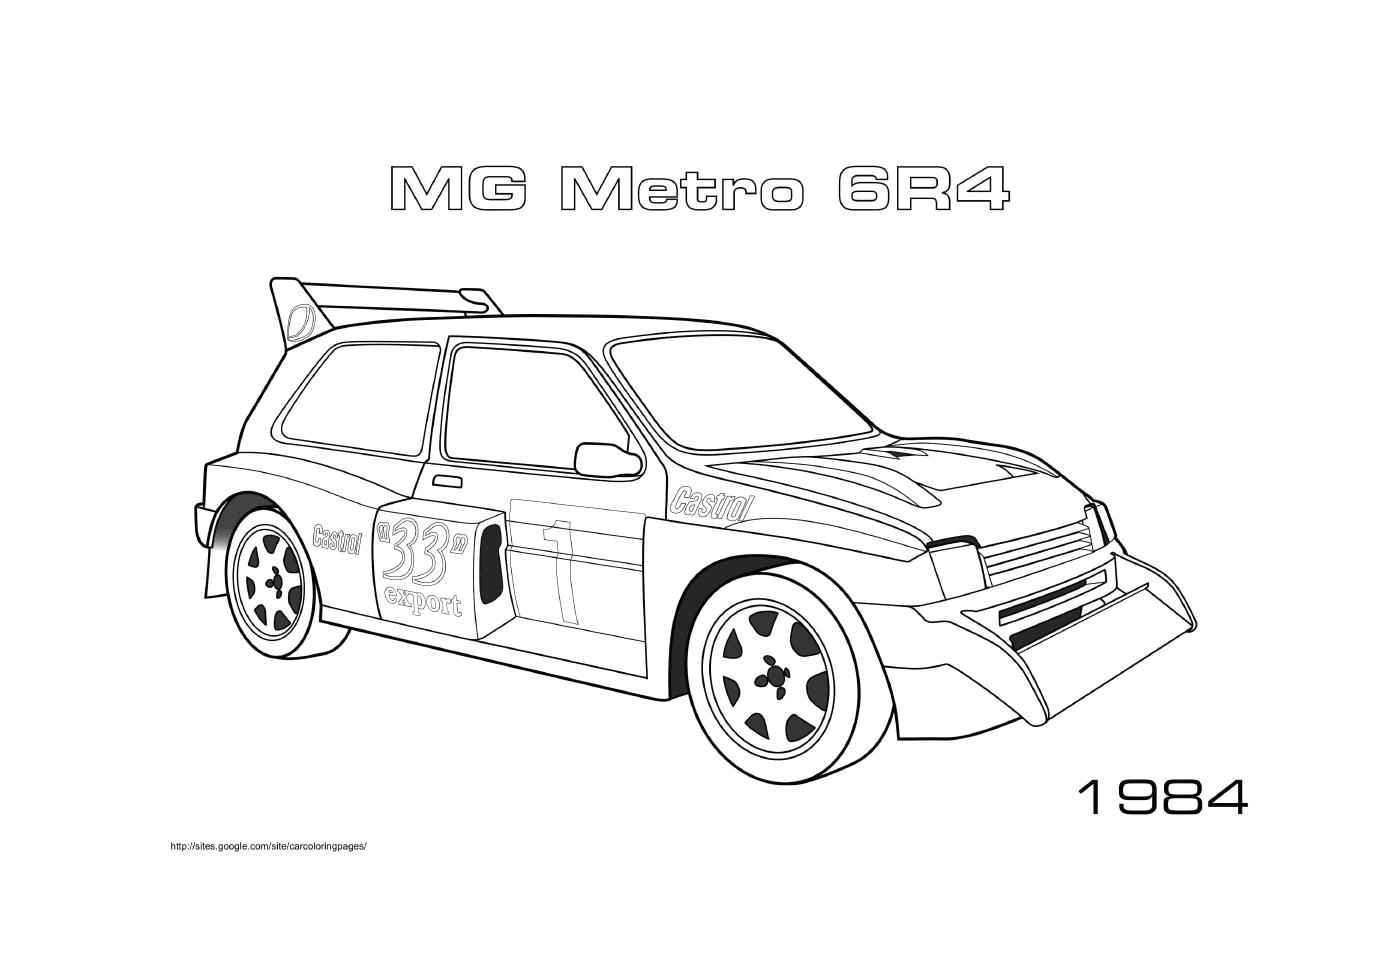  Metro MG 6r4 1984 